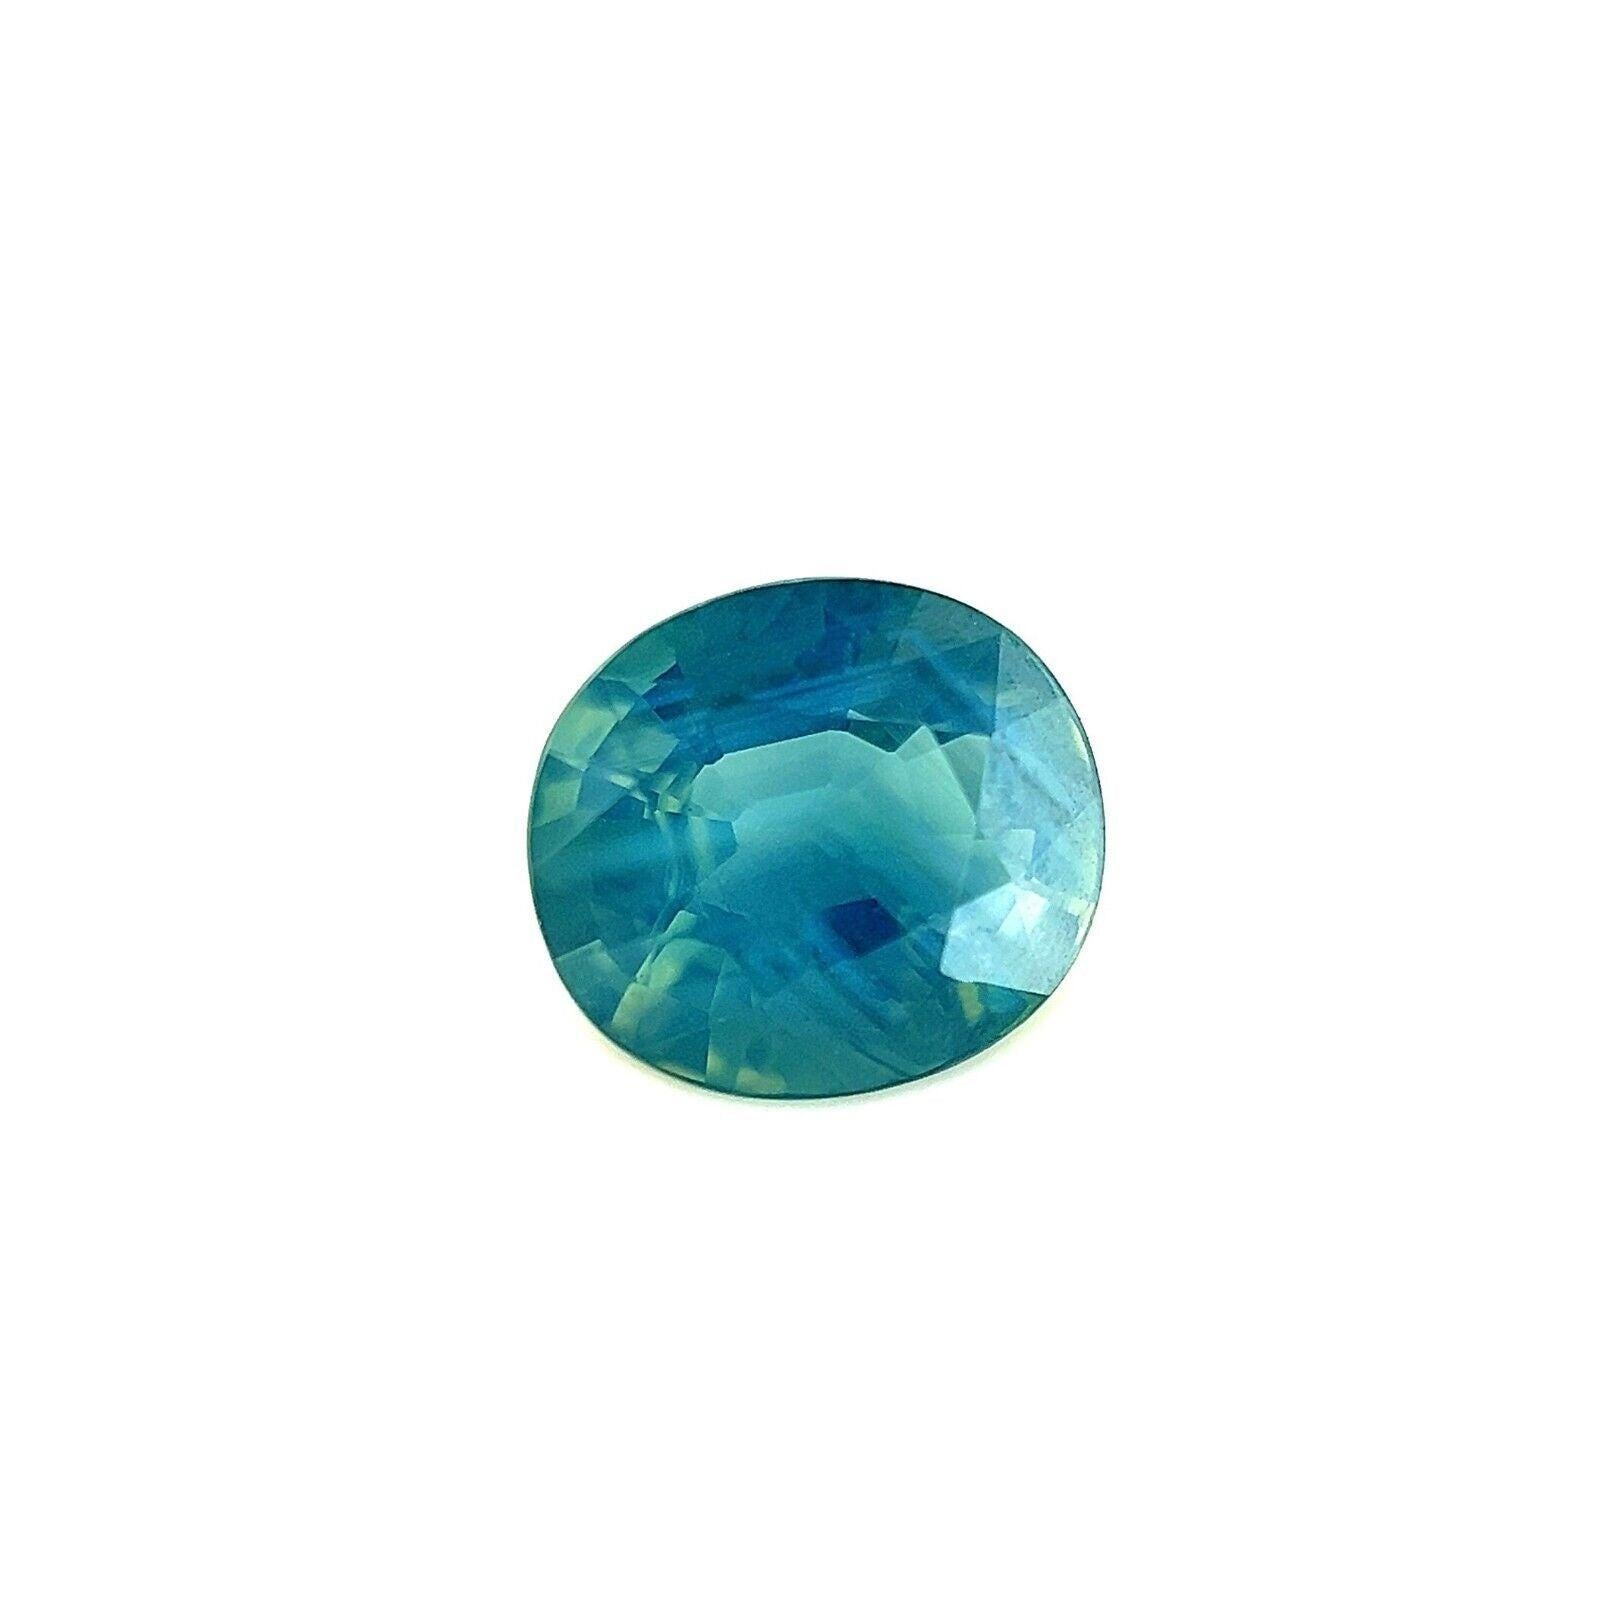 1.08ct Unique Vivid Green Blue Sapphire GRA Certified Oval Cut Gem 6.7x5.9mm

Saphir bleu vert unique certifié GRA.
Saphir de 1,08 carat d'une belle couleur vert bleu. Entièrement certifié par GRA, confirmant que la pierre est naturelle. Il a